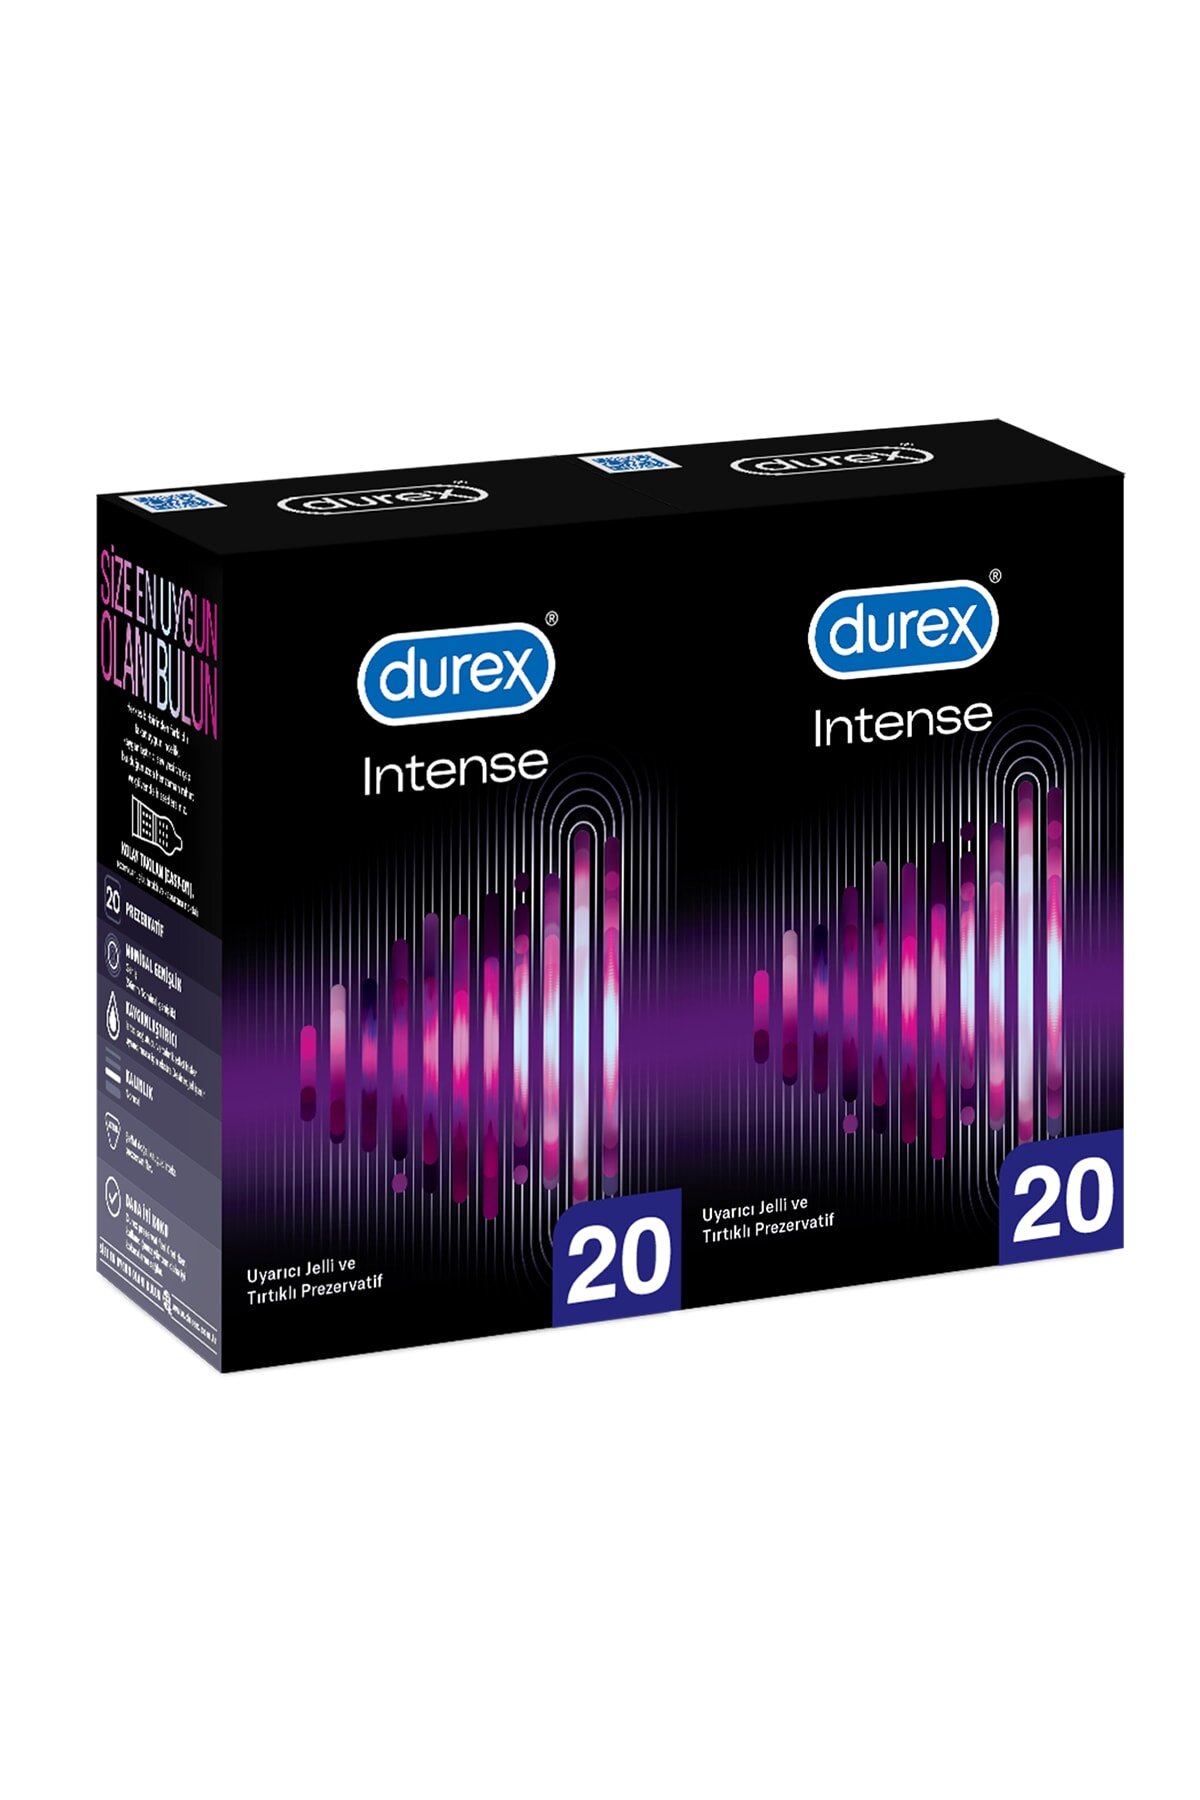 Durex Intense Uyarıcı Jelli ve Tırtıklı Prezervatif 2 x 20'li